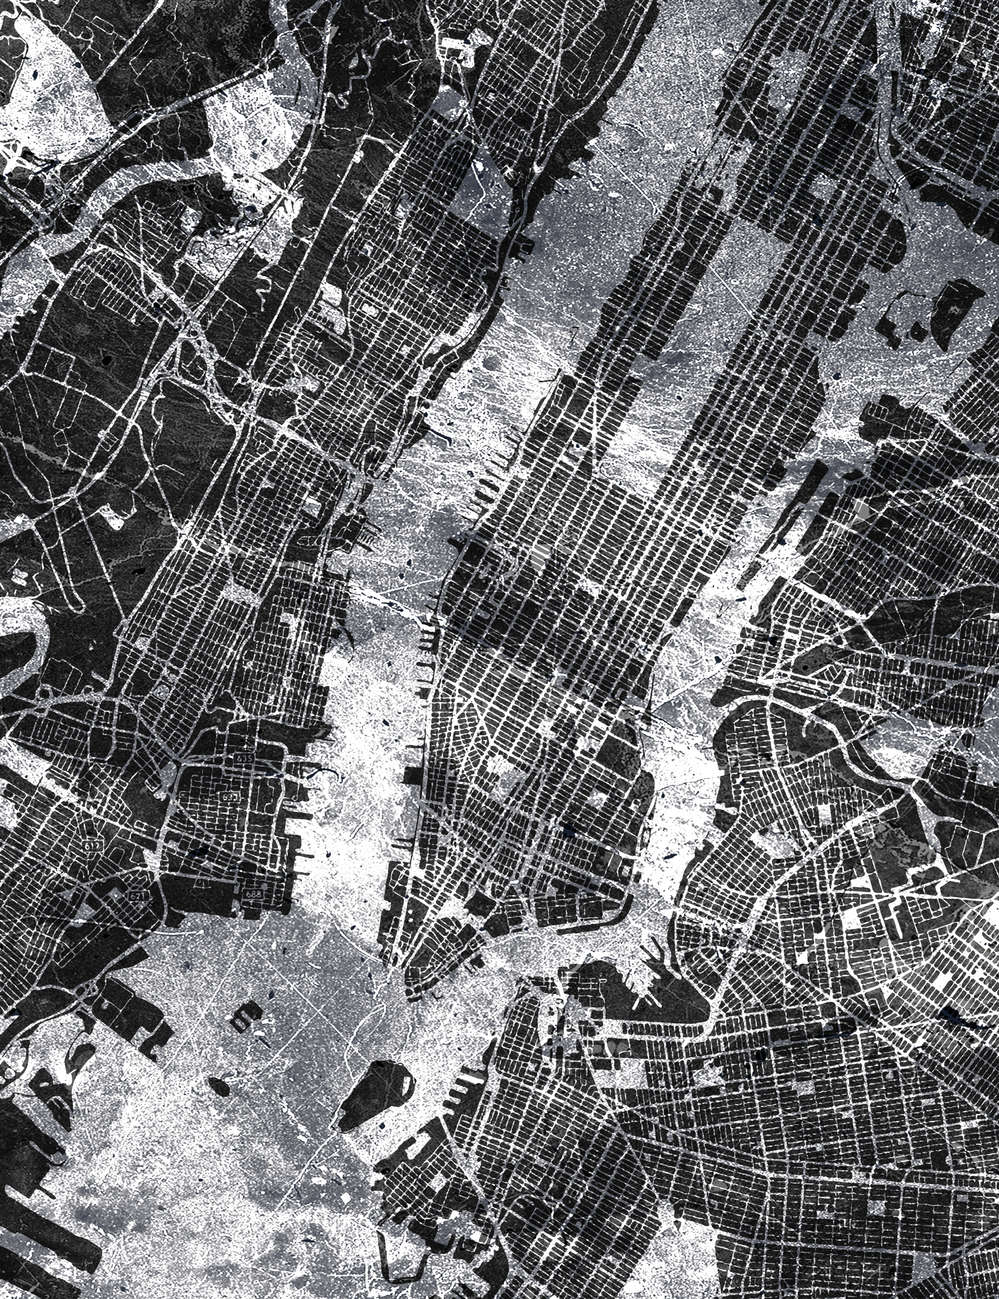             Mappa della città - Mappa della città in bianco e nero in stile rustico
        